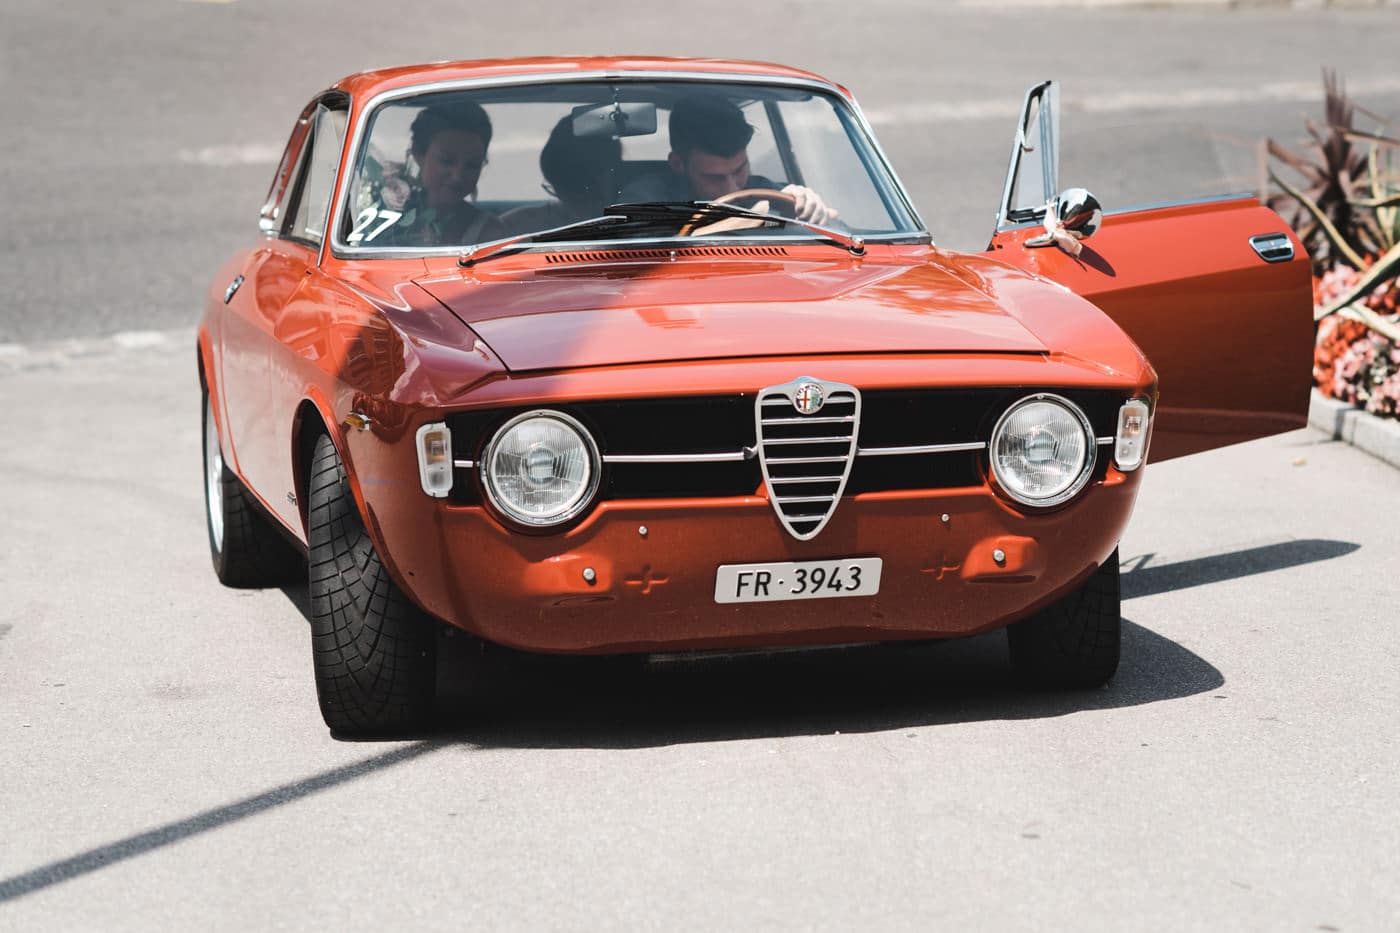 Magnifique Alfa Romeo vintage qui amène les mariés